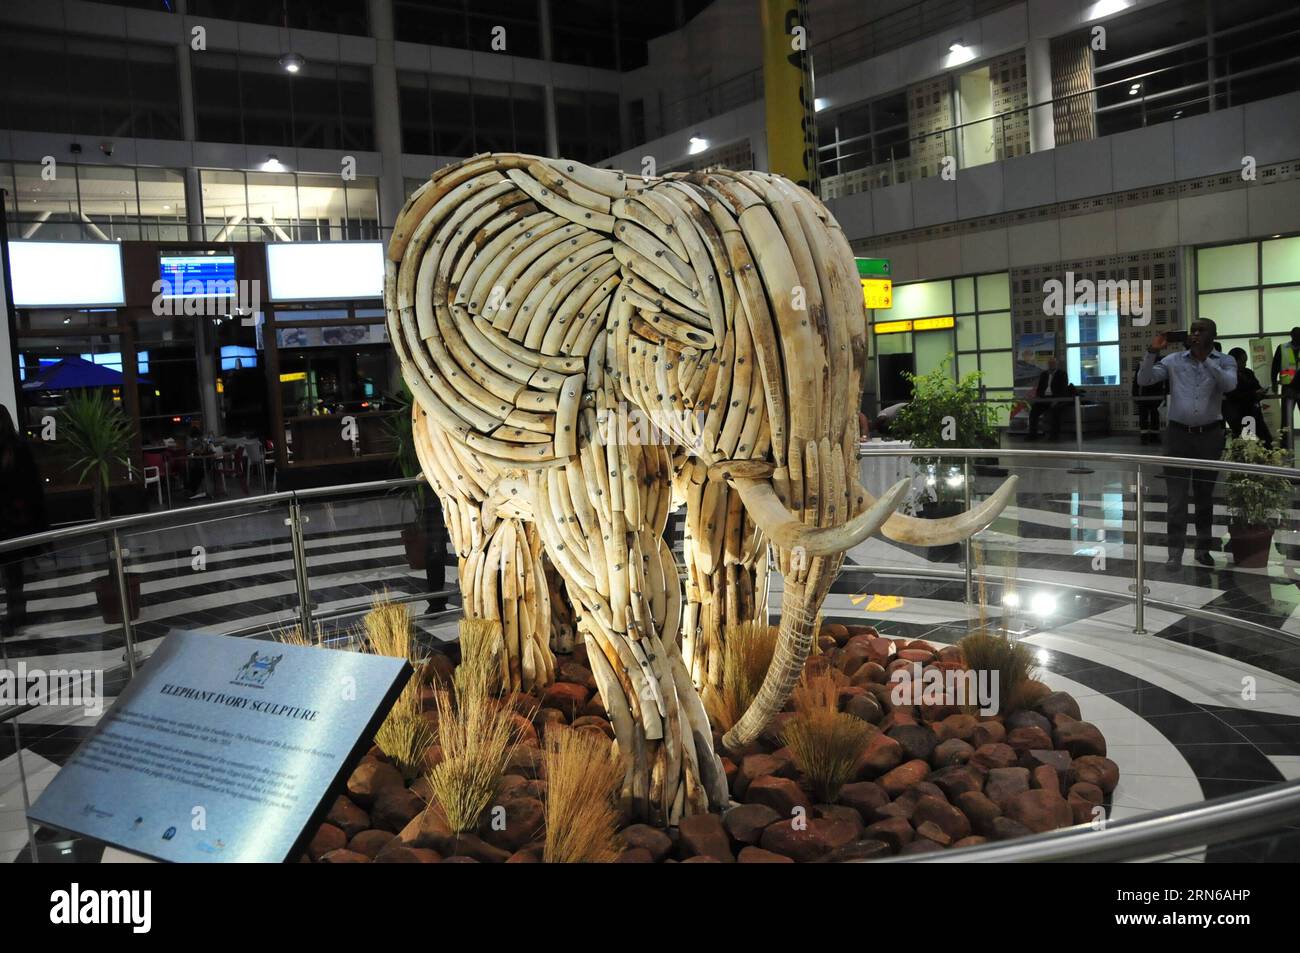 (150717) -- GABORONE, - foto scattata il 16 luglio 2015 mostra una scultura in avorio all'aeroporto internazionale Sir Seretse Khama, a Gaborone, Botswana. Giovedì il presidente del Botswana Seretse Khama Ian Khama ha svelato la scultura in avorio recuperata da elefanti morti in natura per dimostrare la posizione del Botswana nella protezione delle risorse naturali. BOTSWANA-GABORONE-IVORY SCULPTURE-UNVEILING LyuxTianran PUBLICATIONxNOTxINxCHN 150717 Gaborone foto scattata IL 16 luglio 2015 mostra alla scultura avorio PRESSO L'Aeroporto Internazionale Sir SERETSE Khama di Gaborone Botswana Presidente del Botswana SERETSE Kham Foto Stock